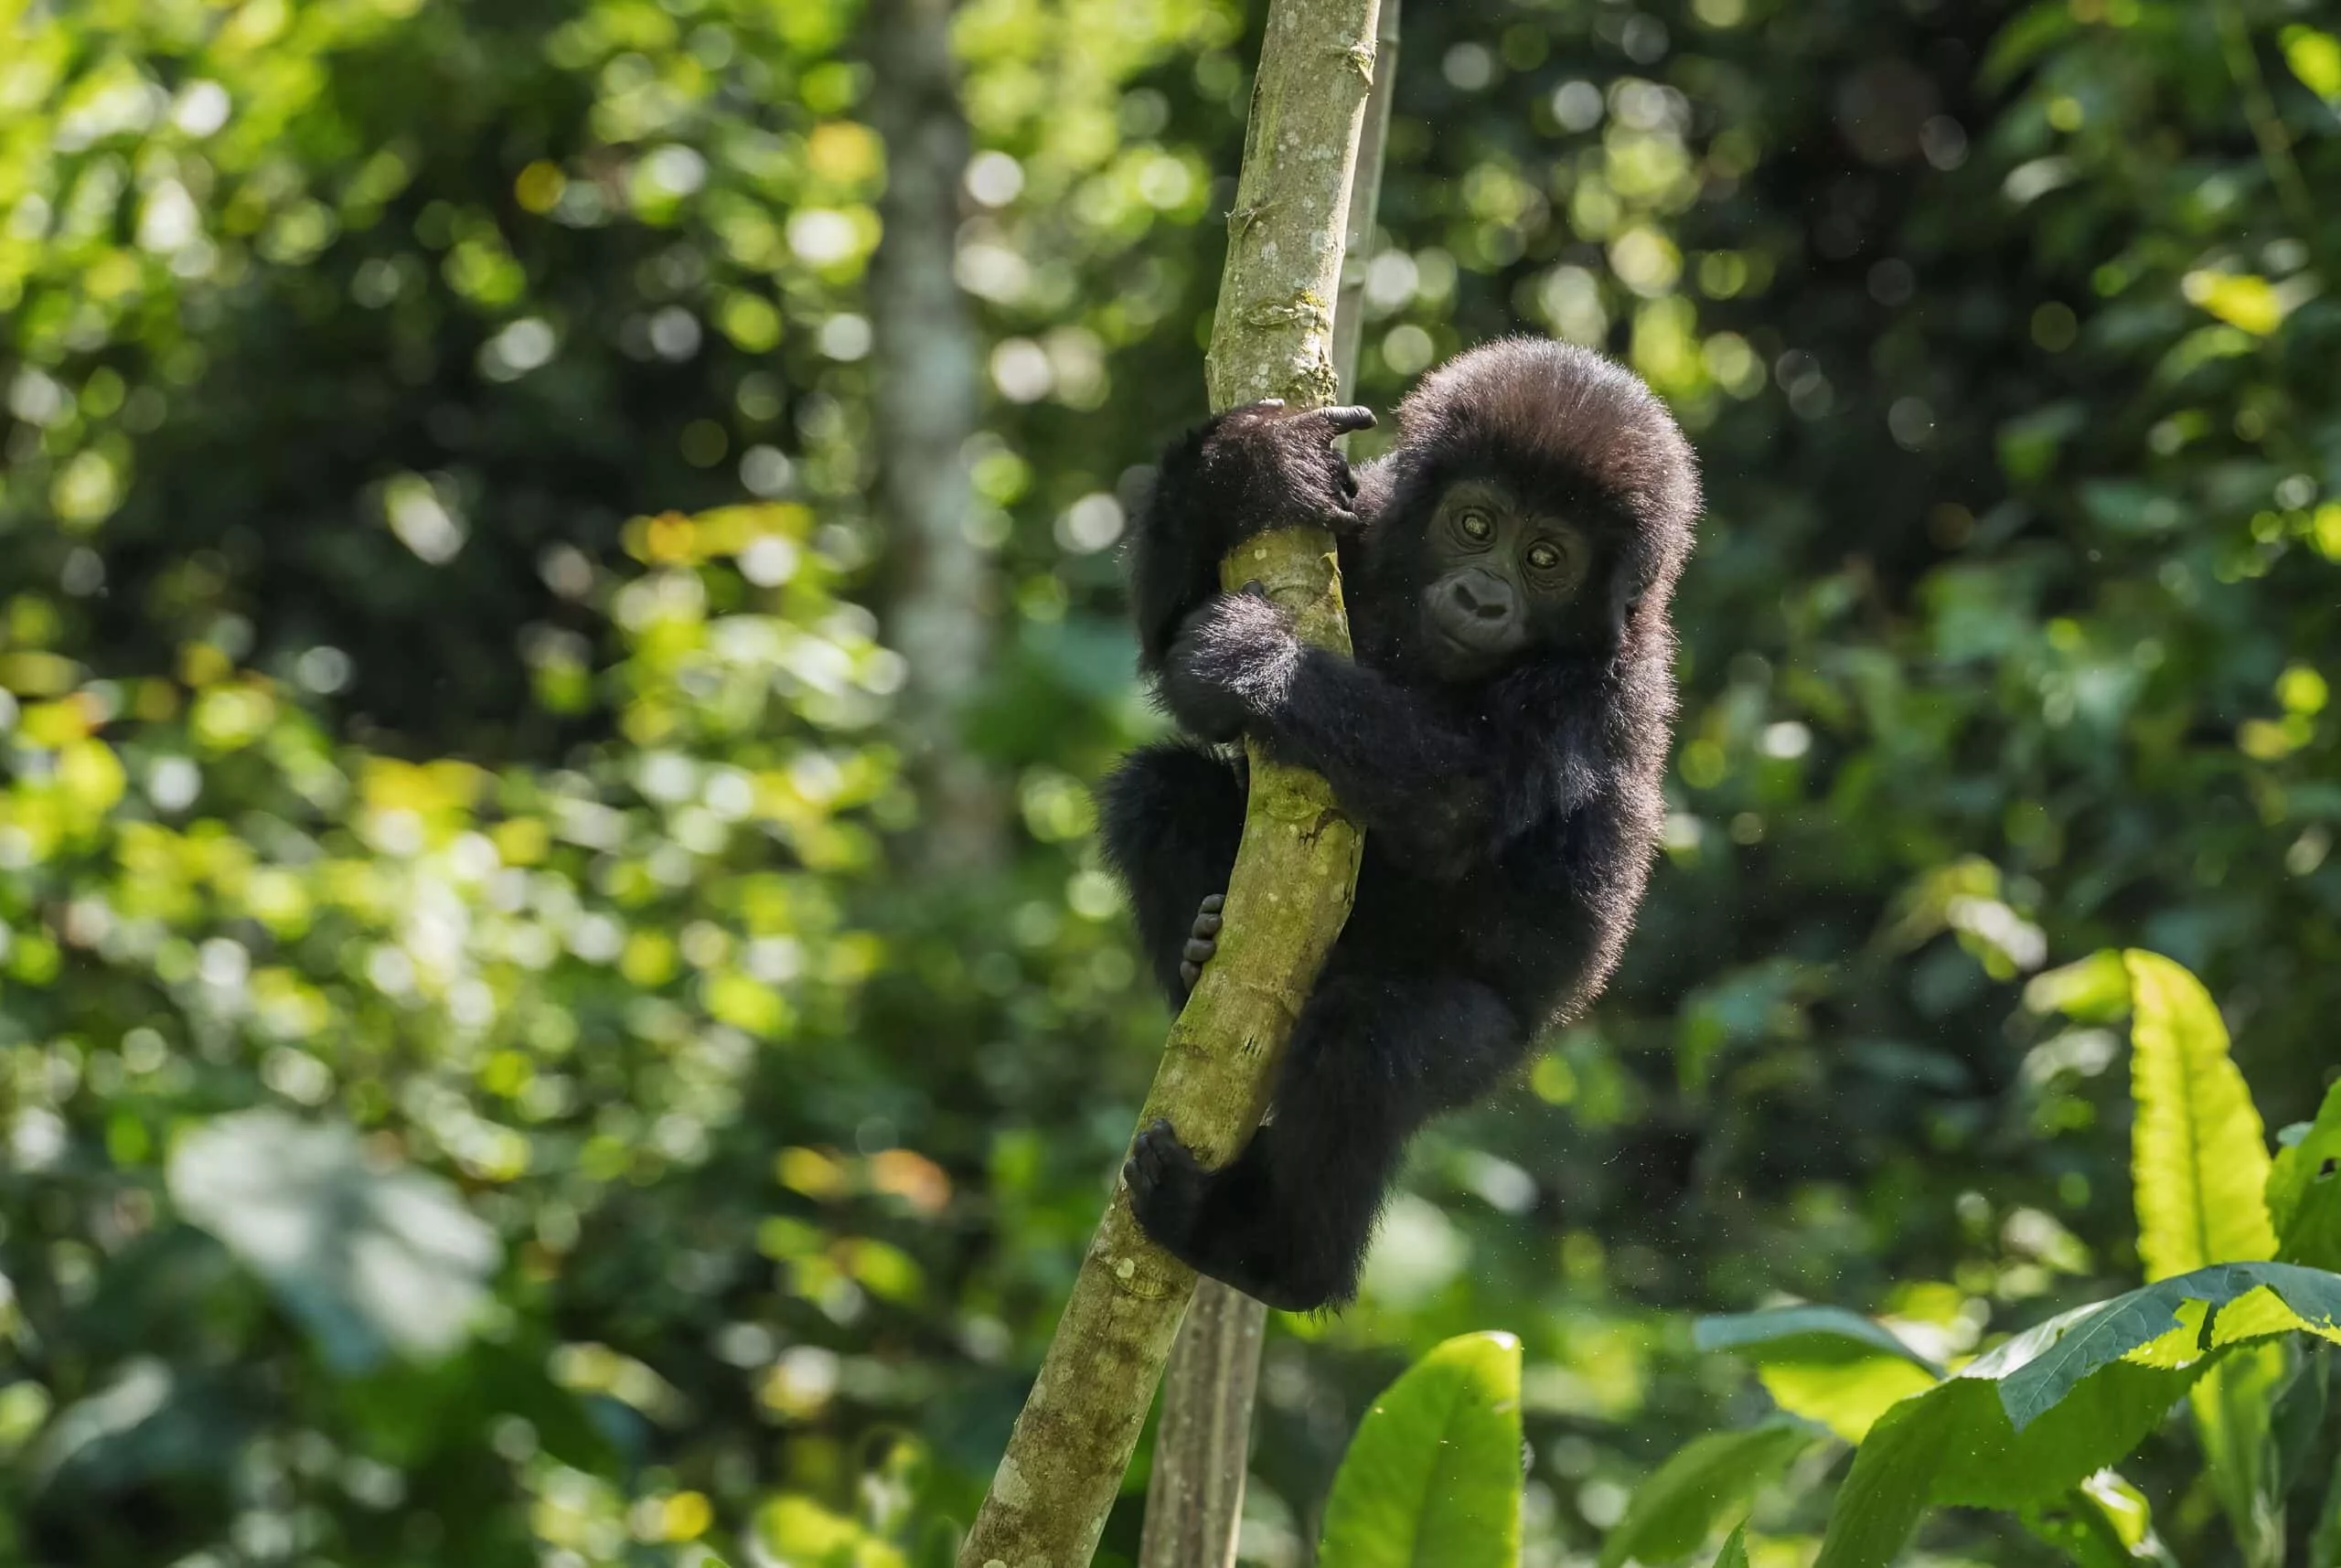 Juvenile Gorilla climbing a tree